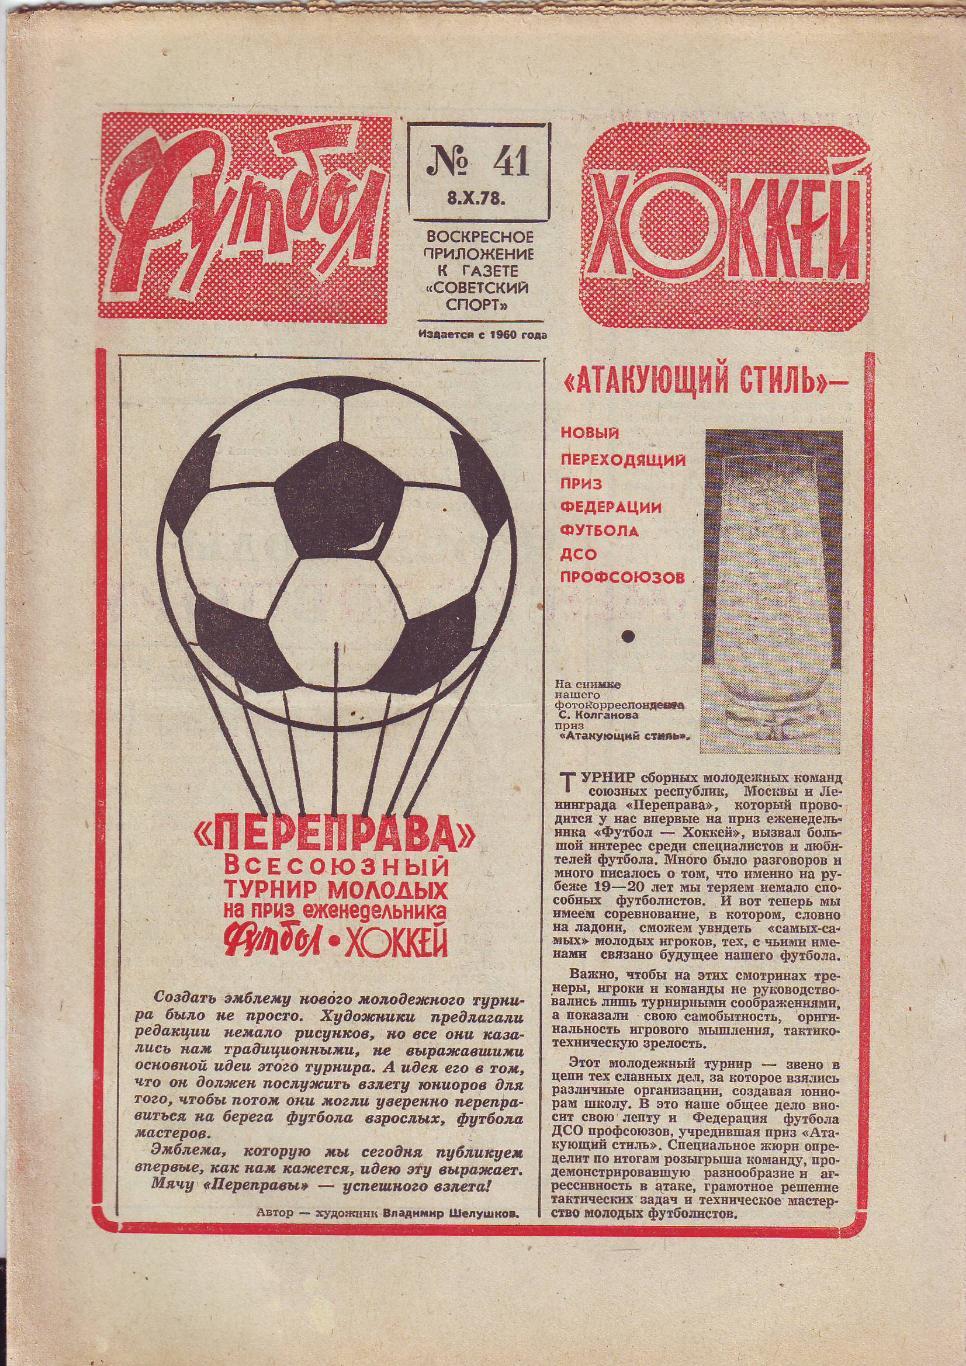 Еженедельник Футбол-Хоккей 1978 год. 11 номеров.